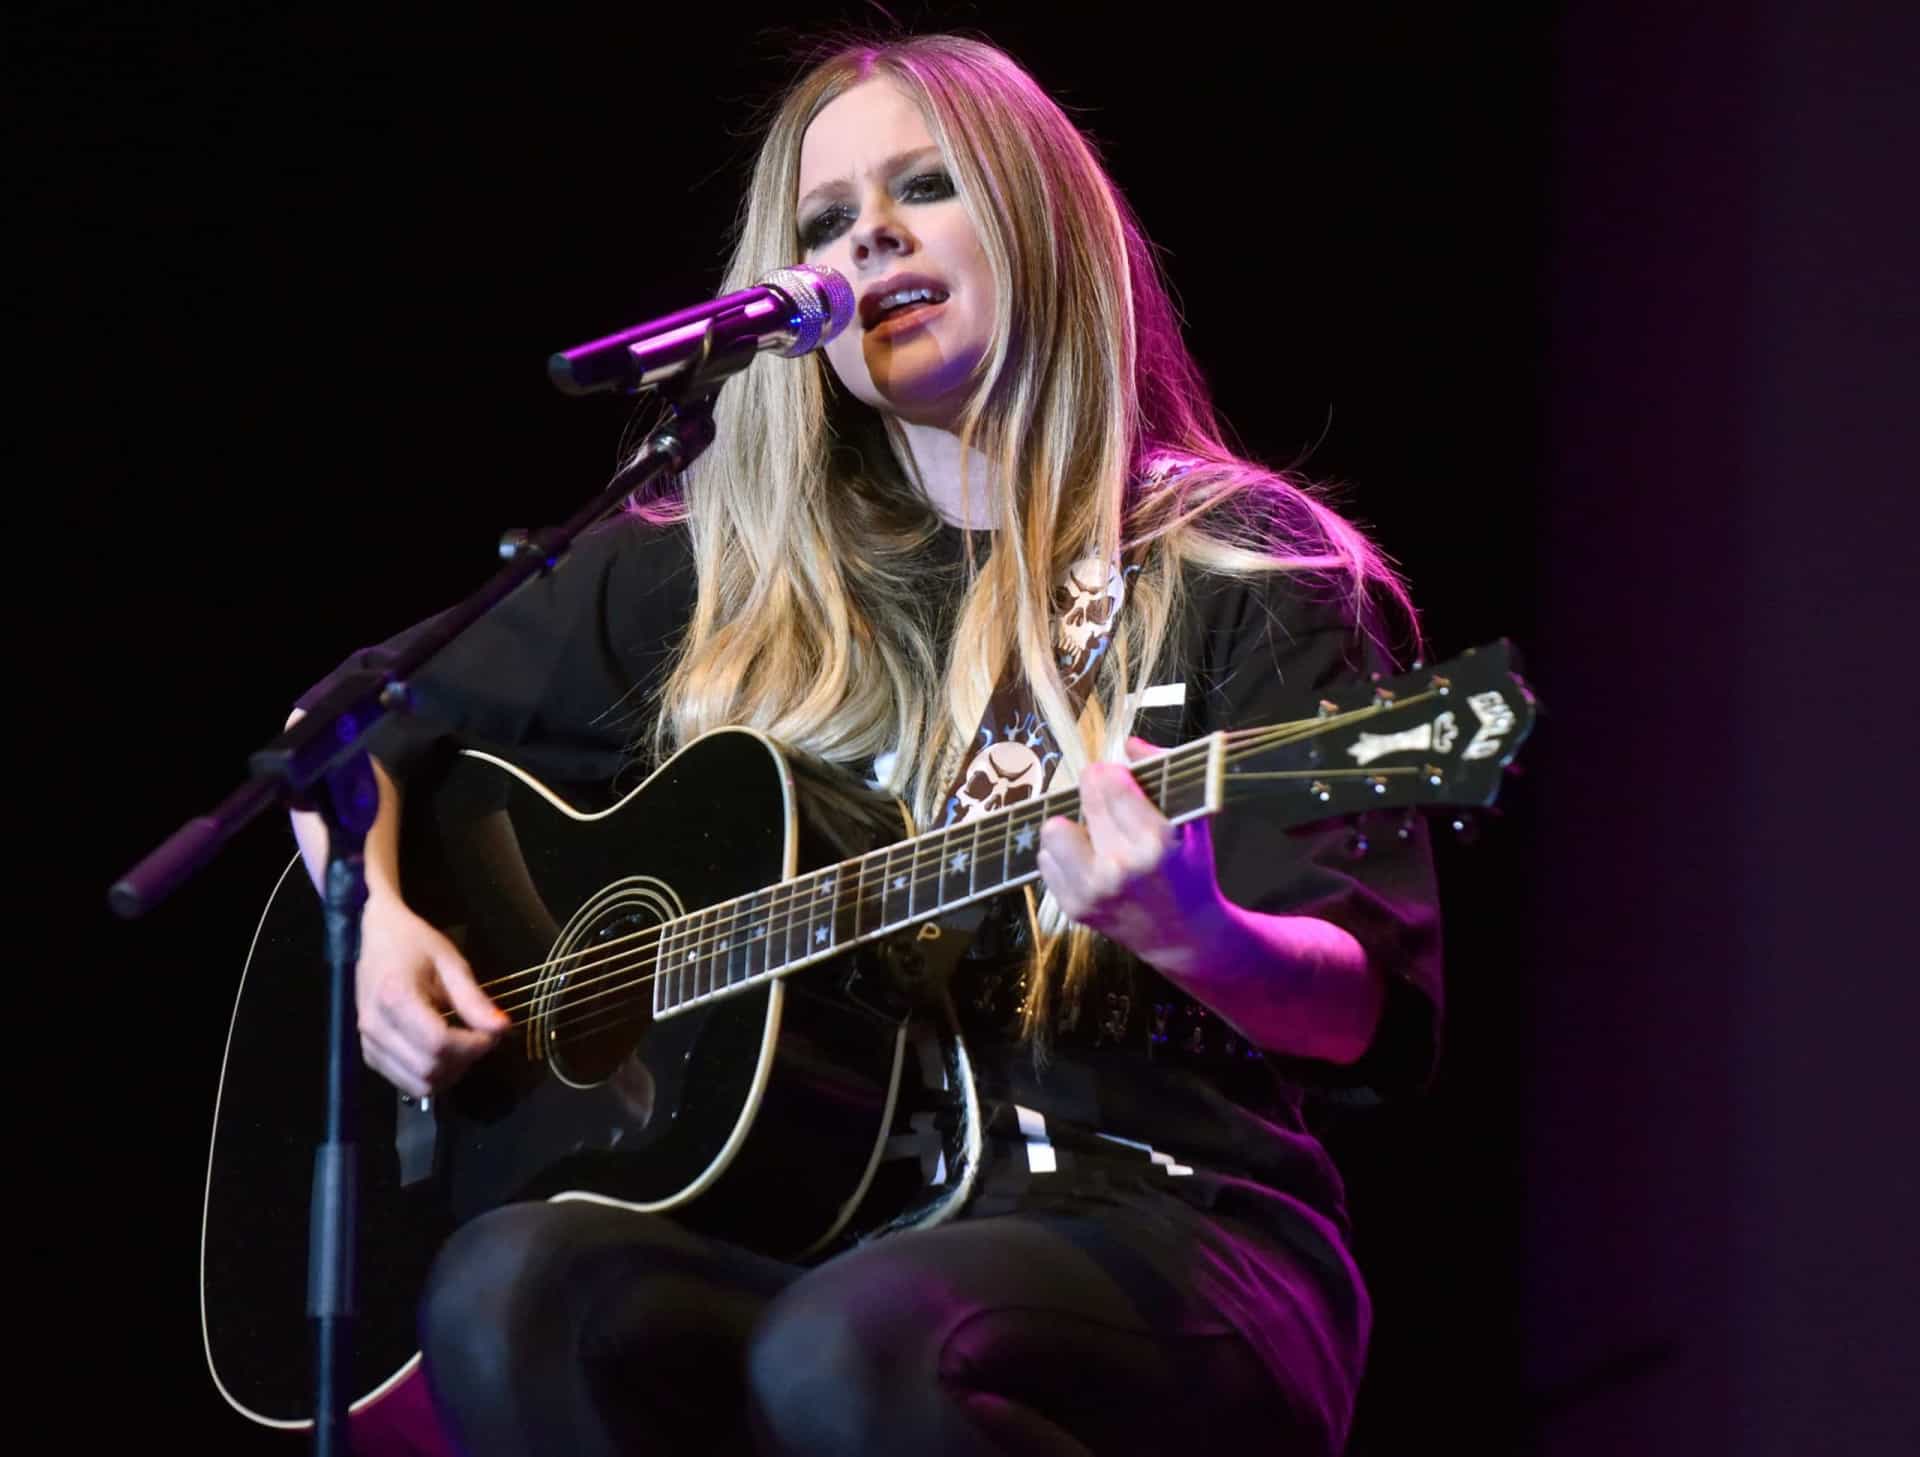 <p>Das 2019 erscheinende Album "Head Above Water" der kanadischen Singer-Songwriterin Avril Lavigne enthält "I Fell in Love with the Devil". Es ist der dritte Track des Albums, der als vierte Single veröffentlicht wurde.</p><p>Sie können auch mögen:<a href="https://de.starsinsider.com/n/426052?utm_source=msn.com&utm_medium=display&utm_campaign=referral_description&utm_content=516985"> Seltene Fotos von Marilyn Monroe enthüllen eine bislang unbekannte Seite des Stars</a></p>